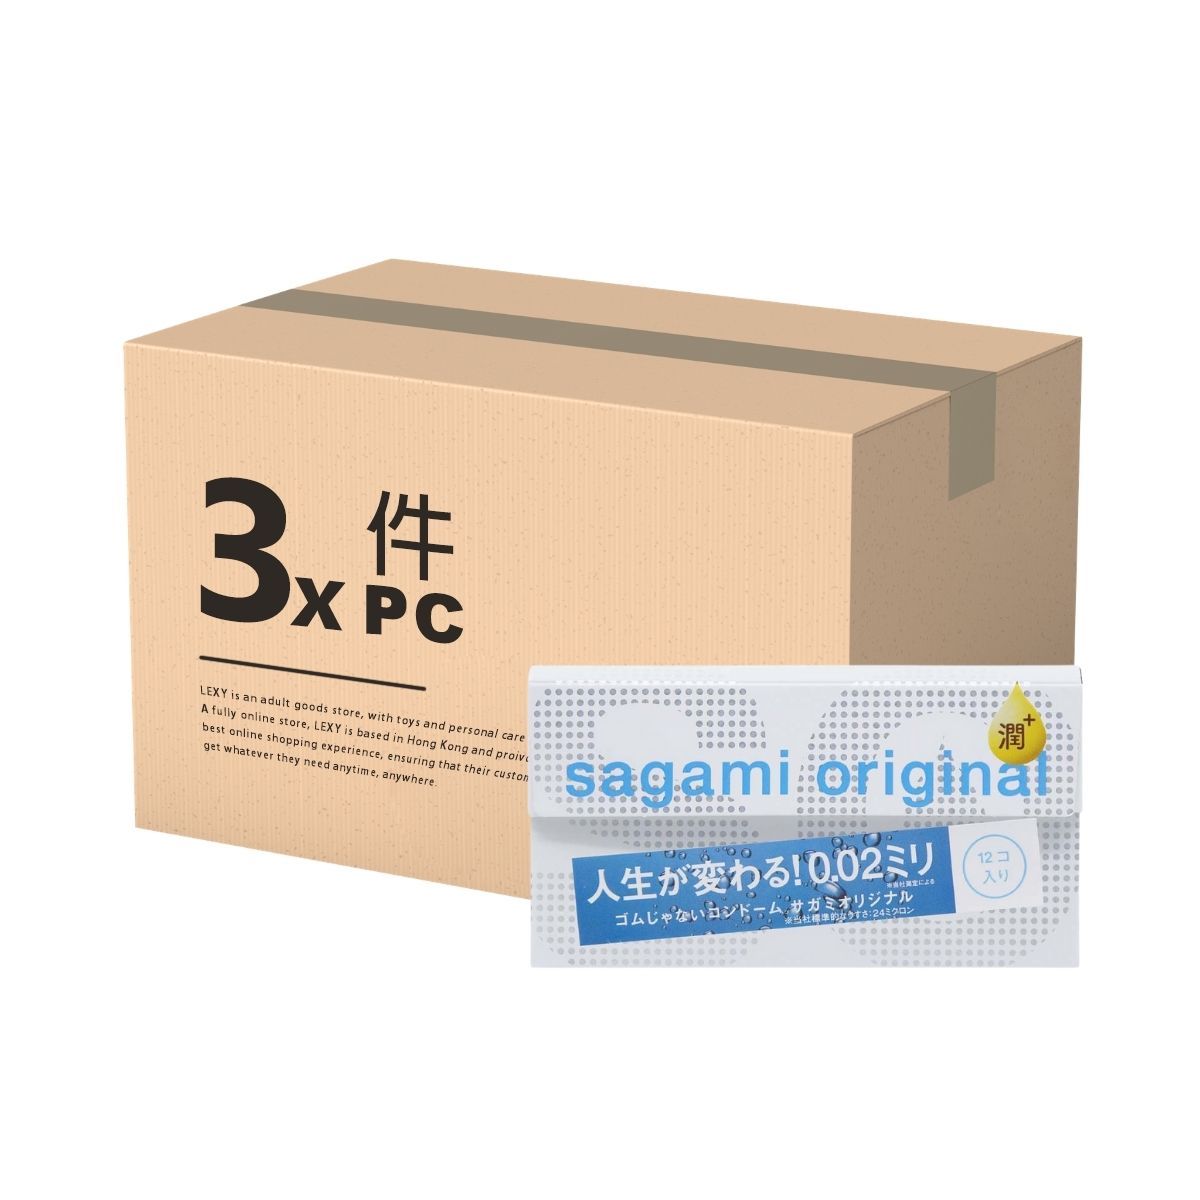 SAGAMI 相模原創 0.02 極潤 第二代 PU 安全套 12 片裝 X 3 件 優惠套裝 購買